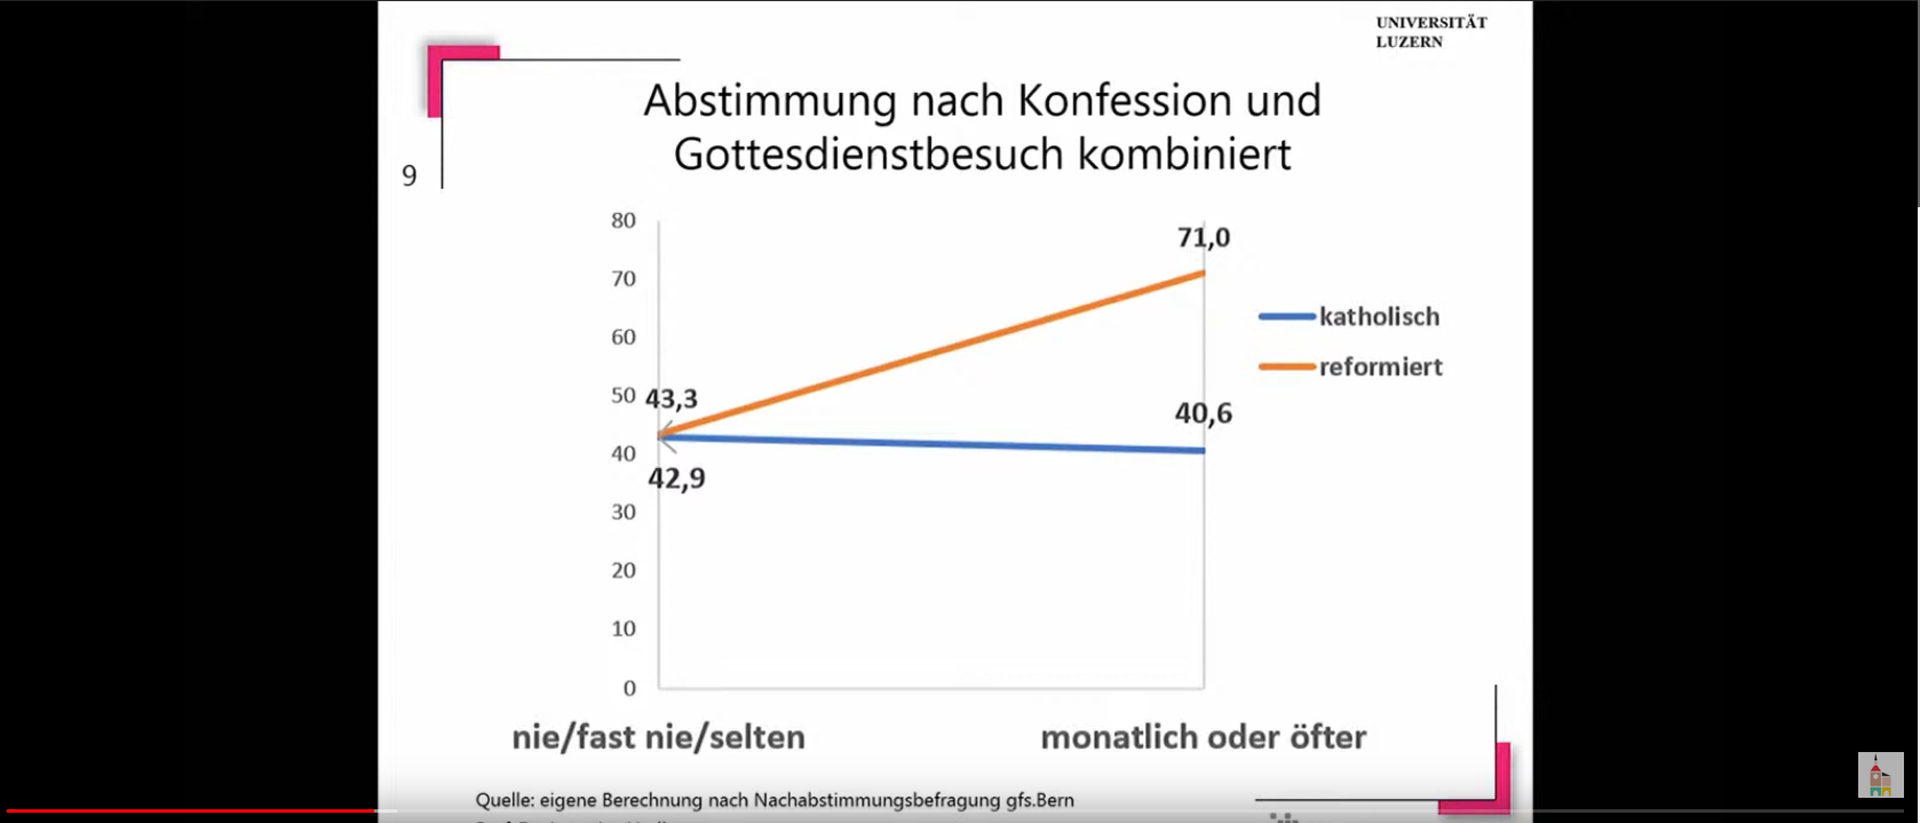 Politikwissenschaftler Antonius Liedhegener von der Universität Luzern präsentierte in einem Referat eine Grafik über den Zusammenhang von Gottesdienstbesuch und Zustimmung zur KVI